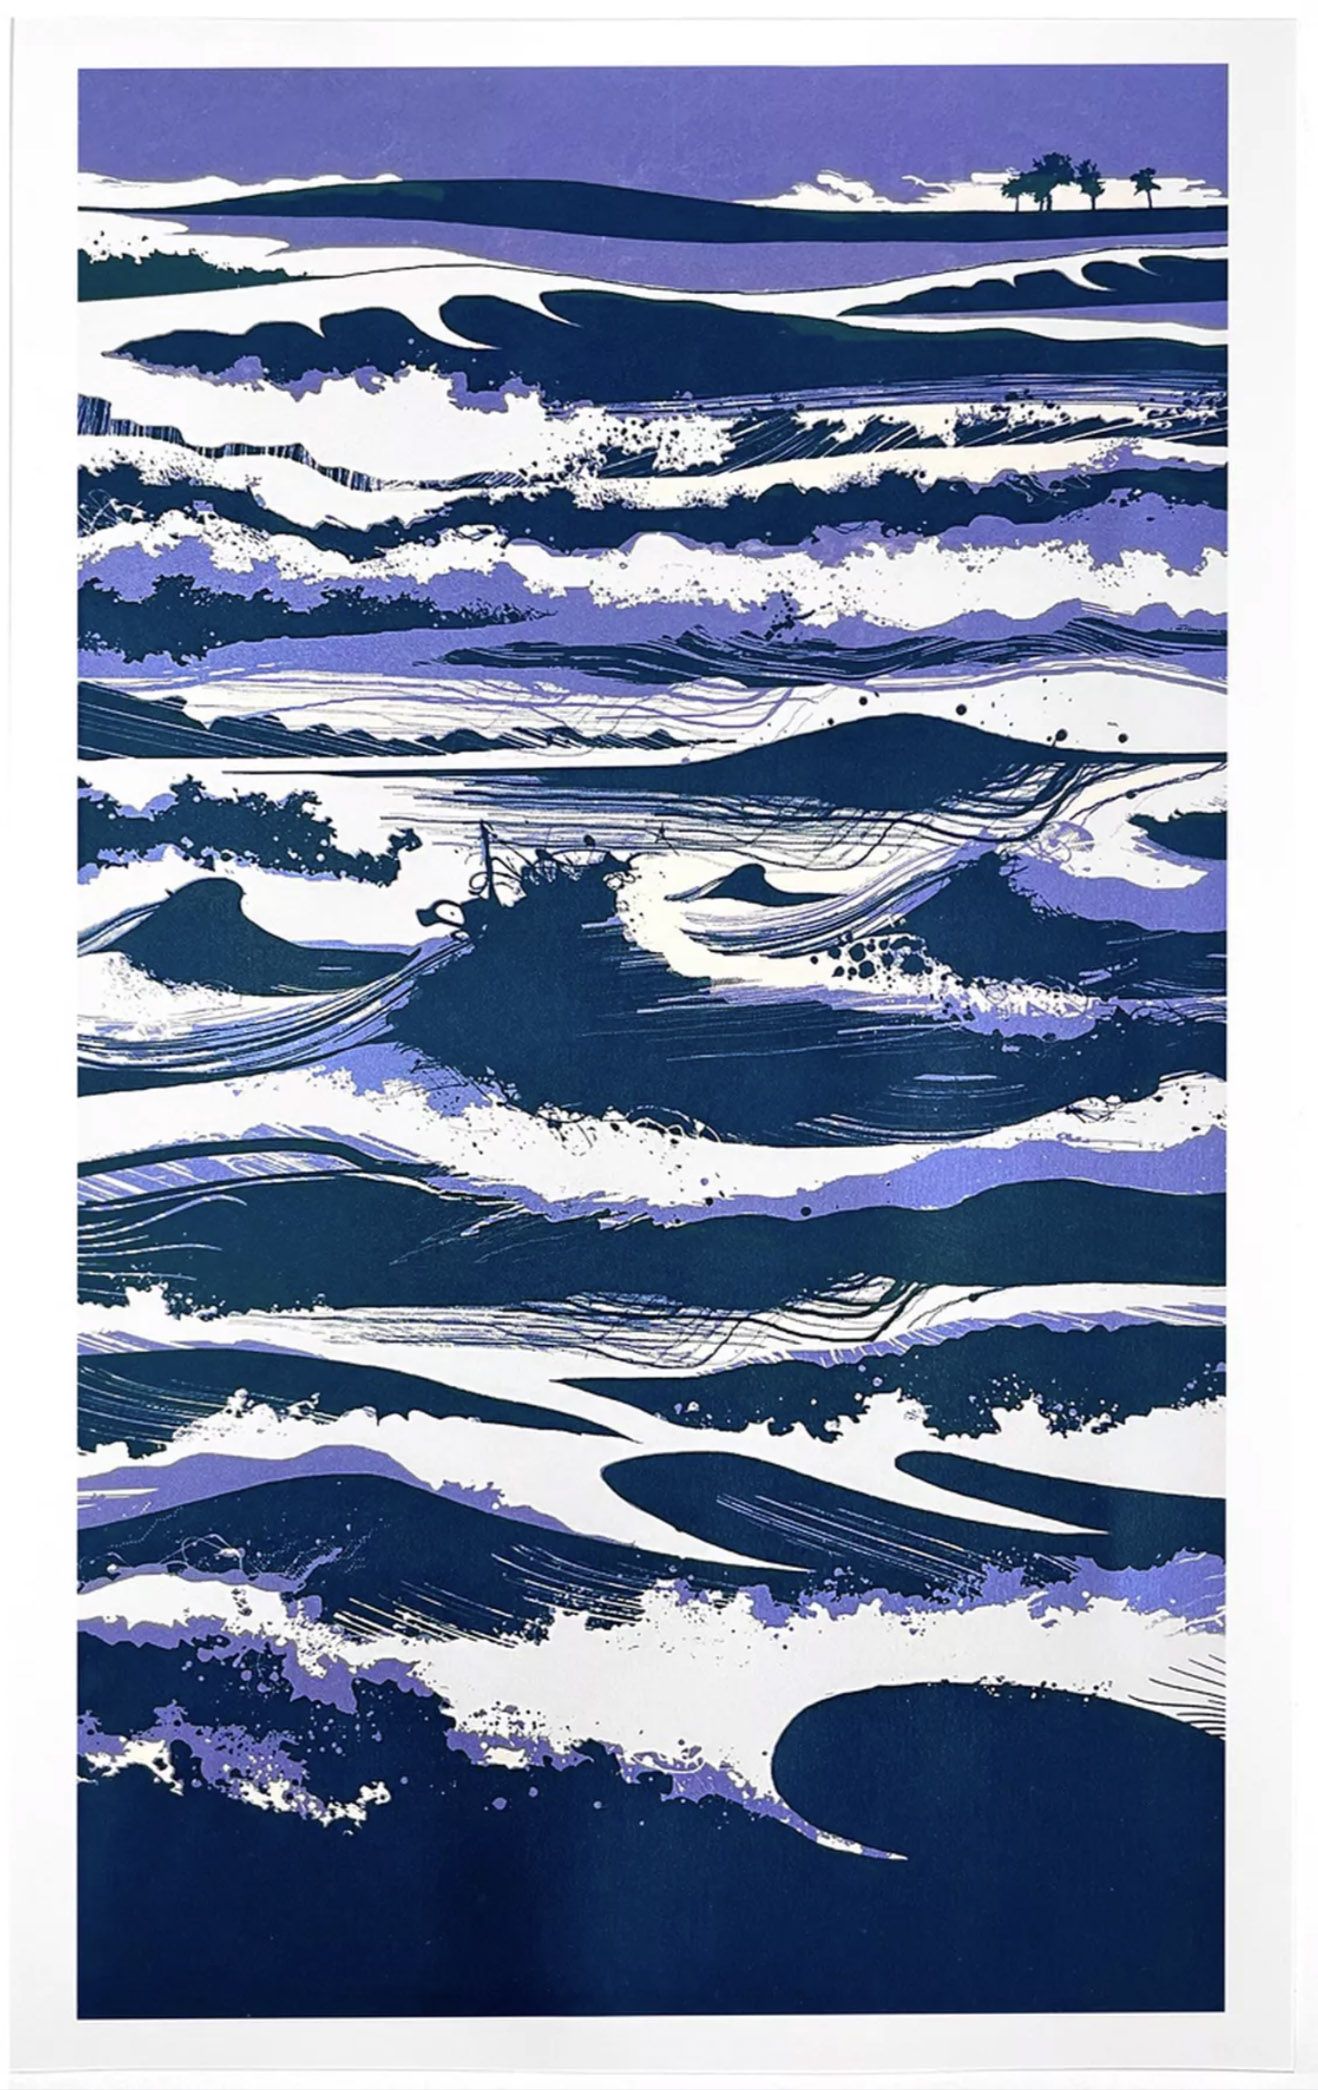 Beyond the Waves by Chris Keegan